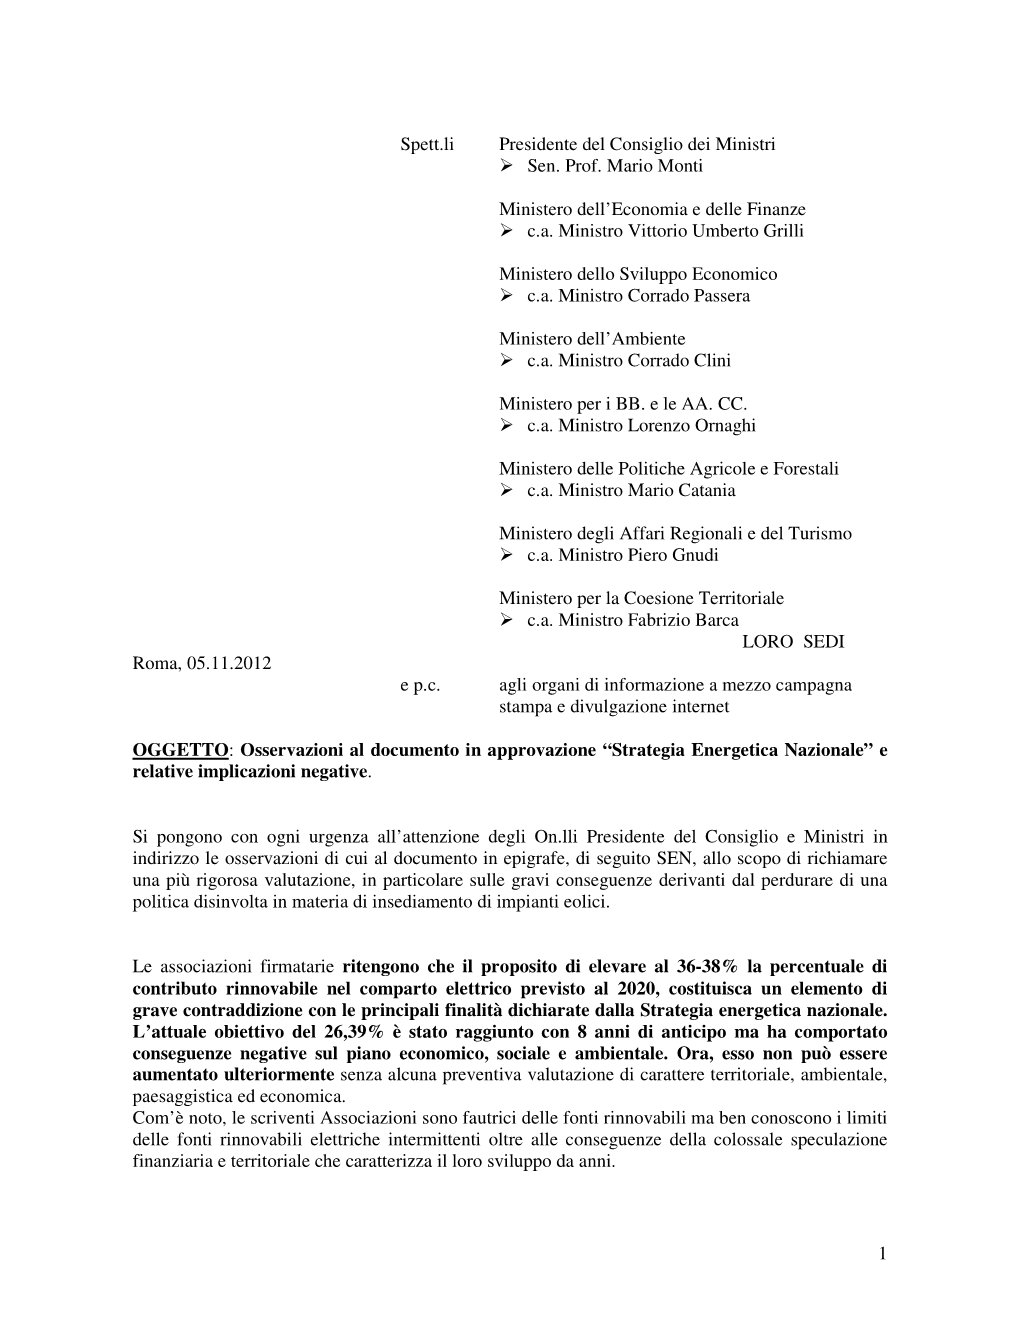 1 Spett.Li Presidente Del Consiglio Dei Ministri Sen. Prof. Mario Monti Ministero Dell'economia E Delle Finanze C.A